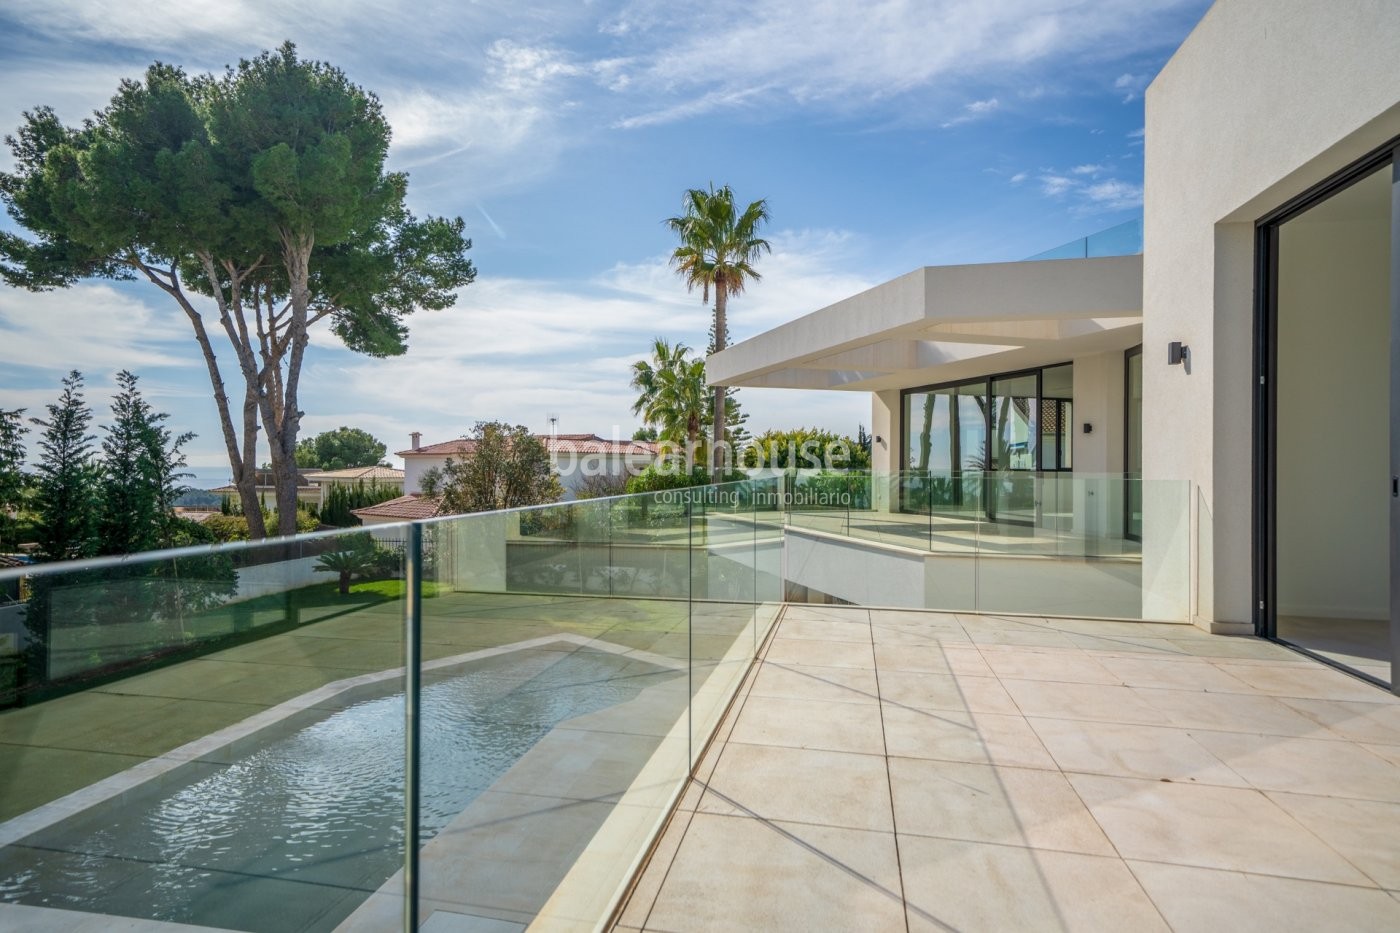 Design und lichtdurchflutete Räume in dieser neu gebauten Villa mit Meerblick in Cas Catalá.